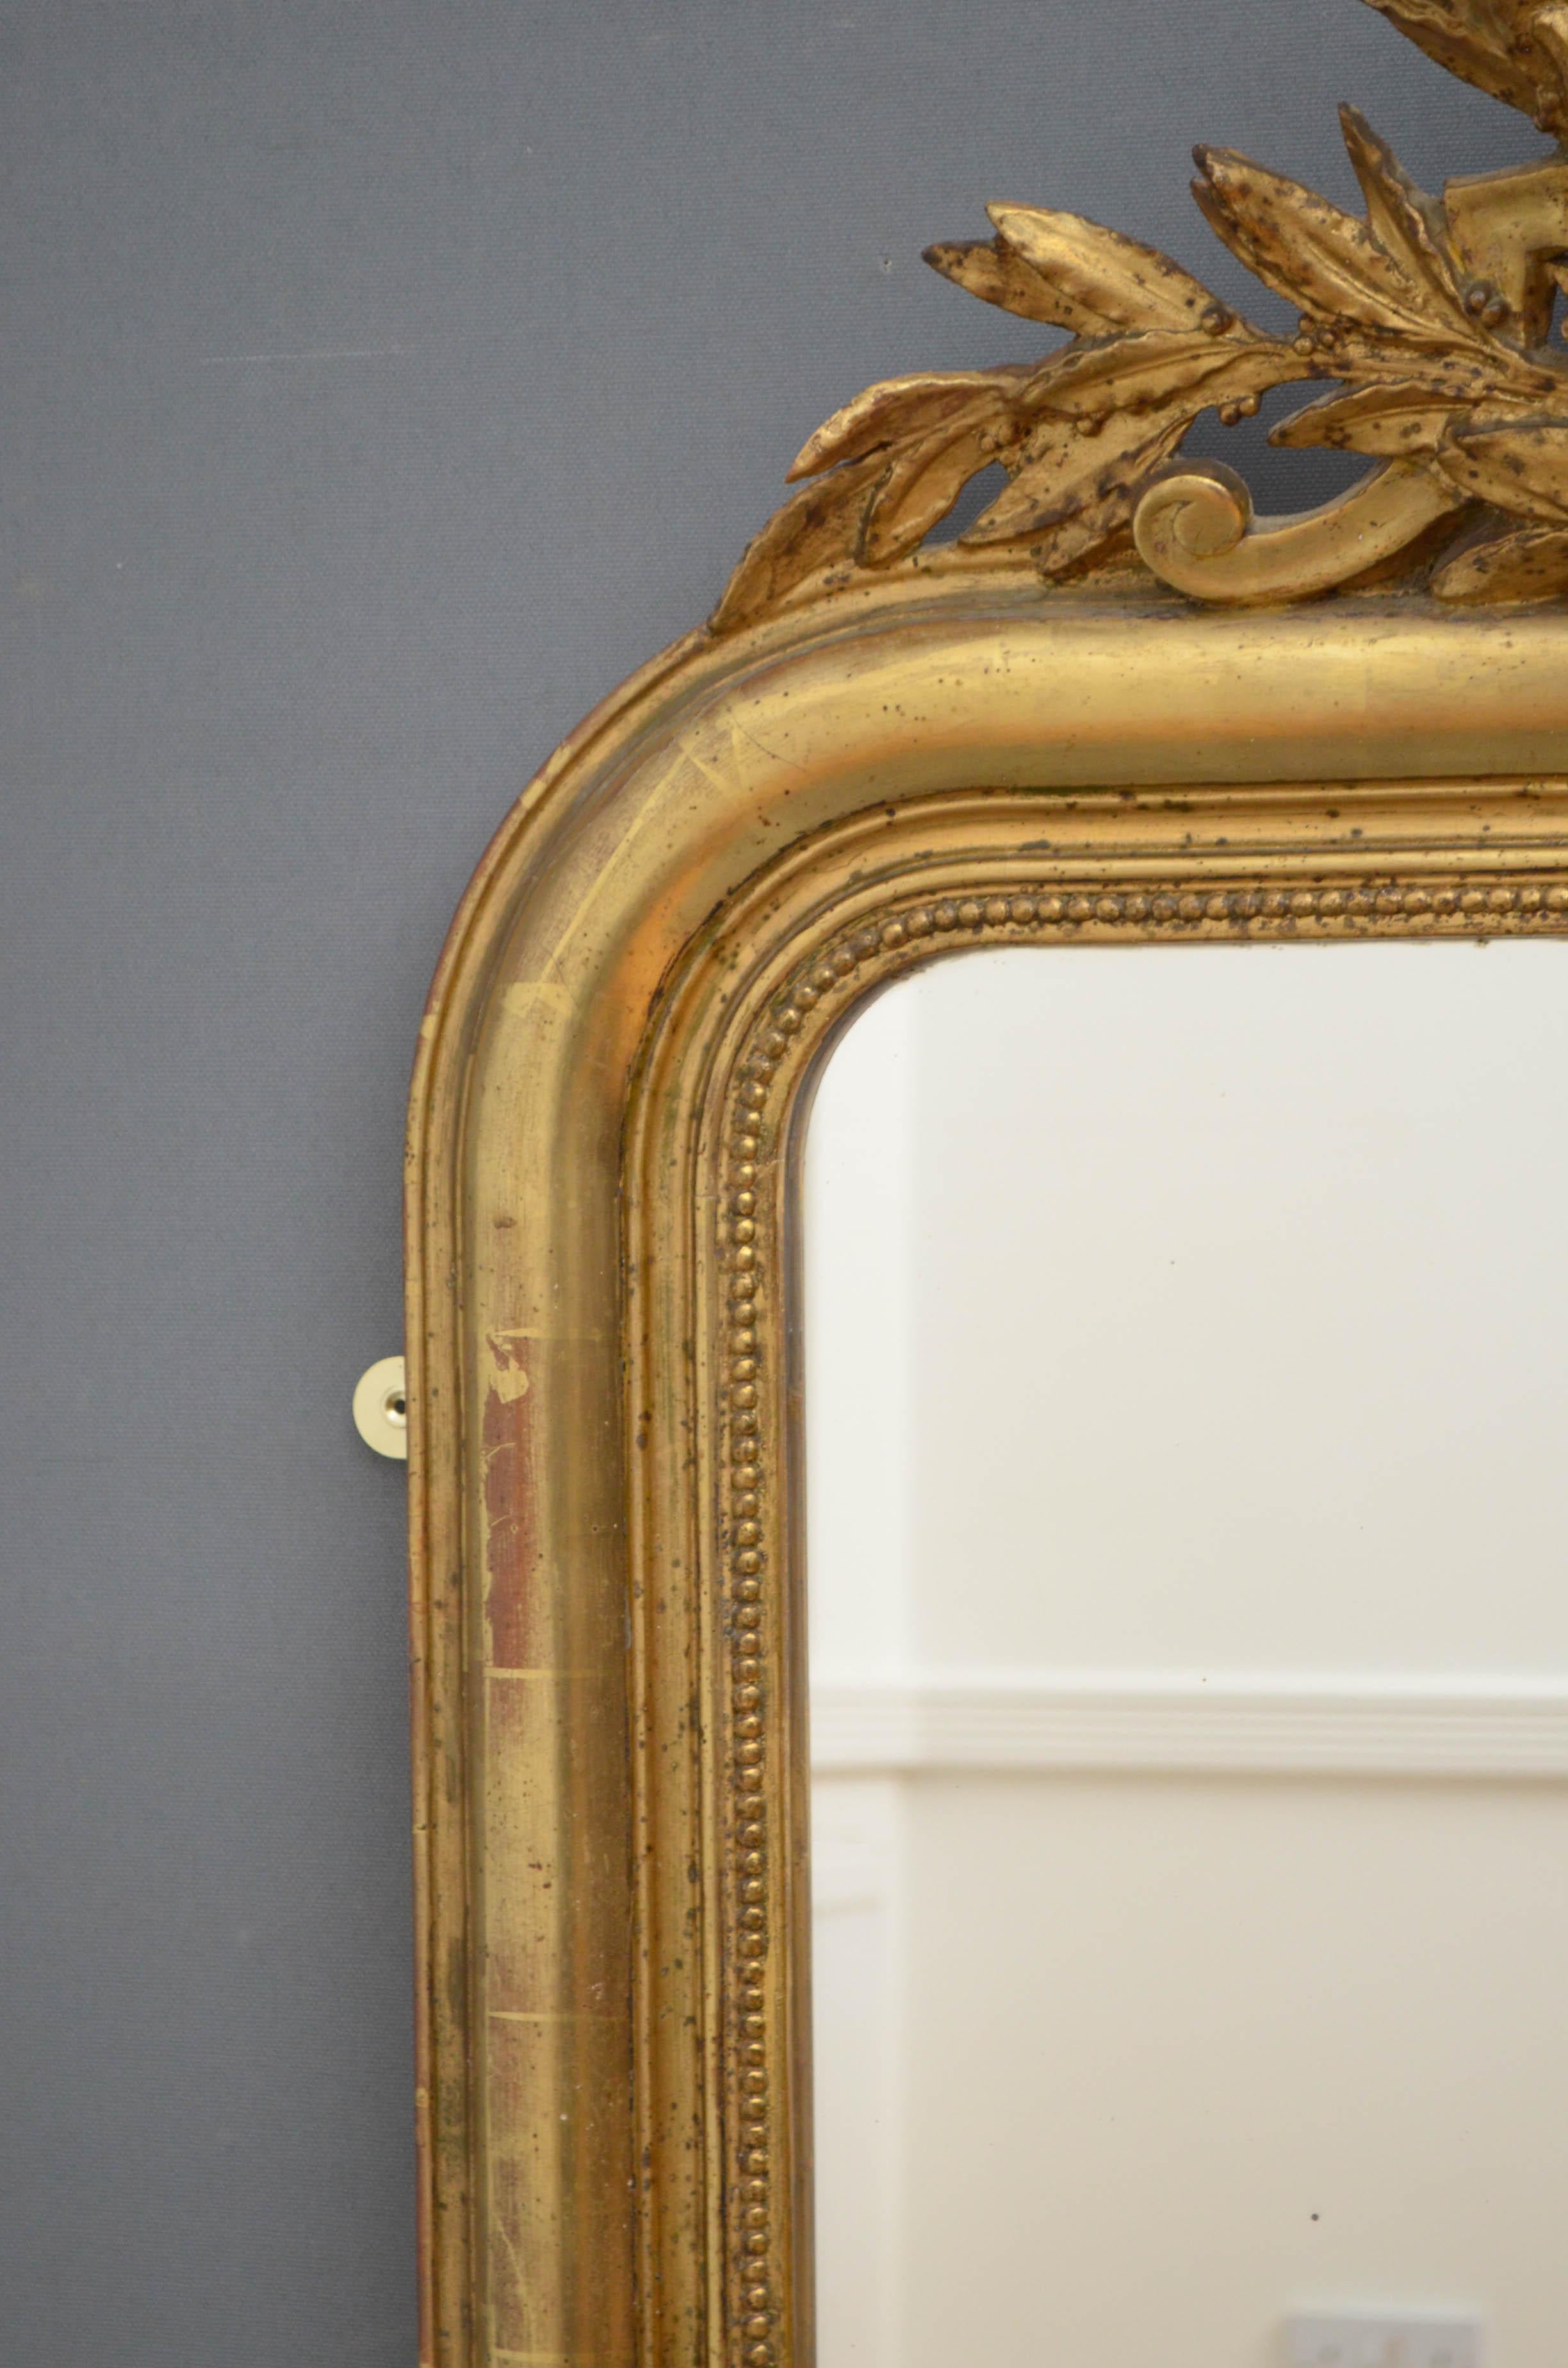 Sn4805, très beau miroir doré du 19ème siècle, avec verre d'origine avec quelques rousseurs dans un cadre décoratif avec des rinceaux à la base et une crête feuillue au sommet, renfermant un petit miroir à bord biseauté. Ce miroir ancien a conservé